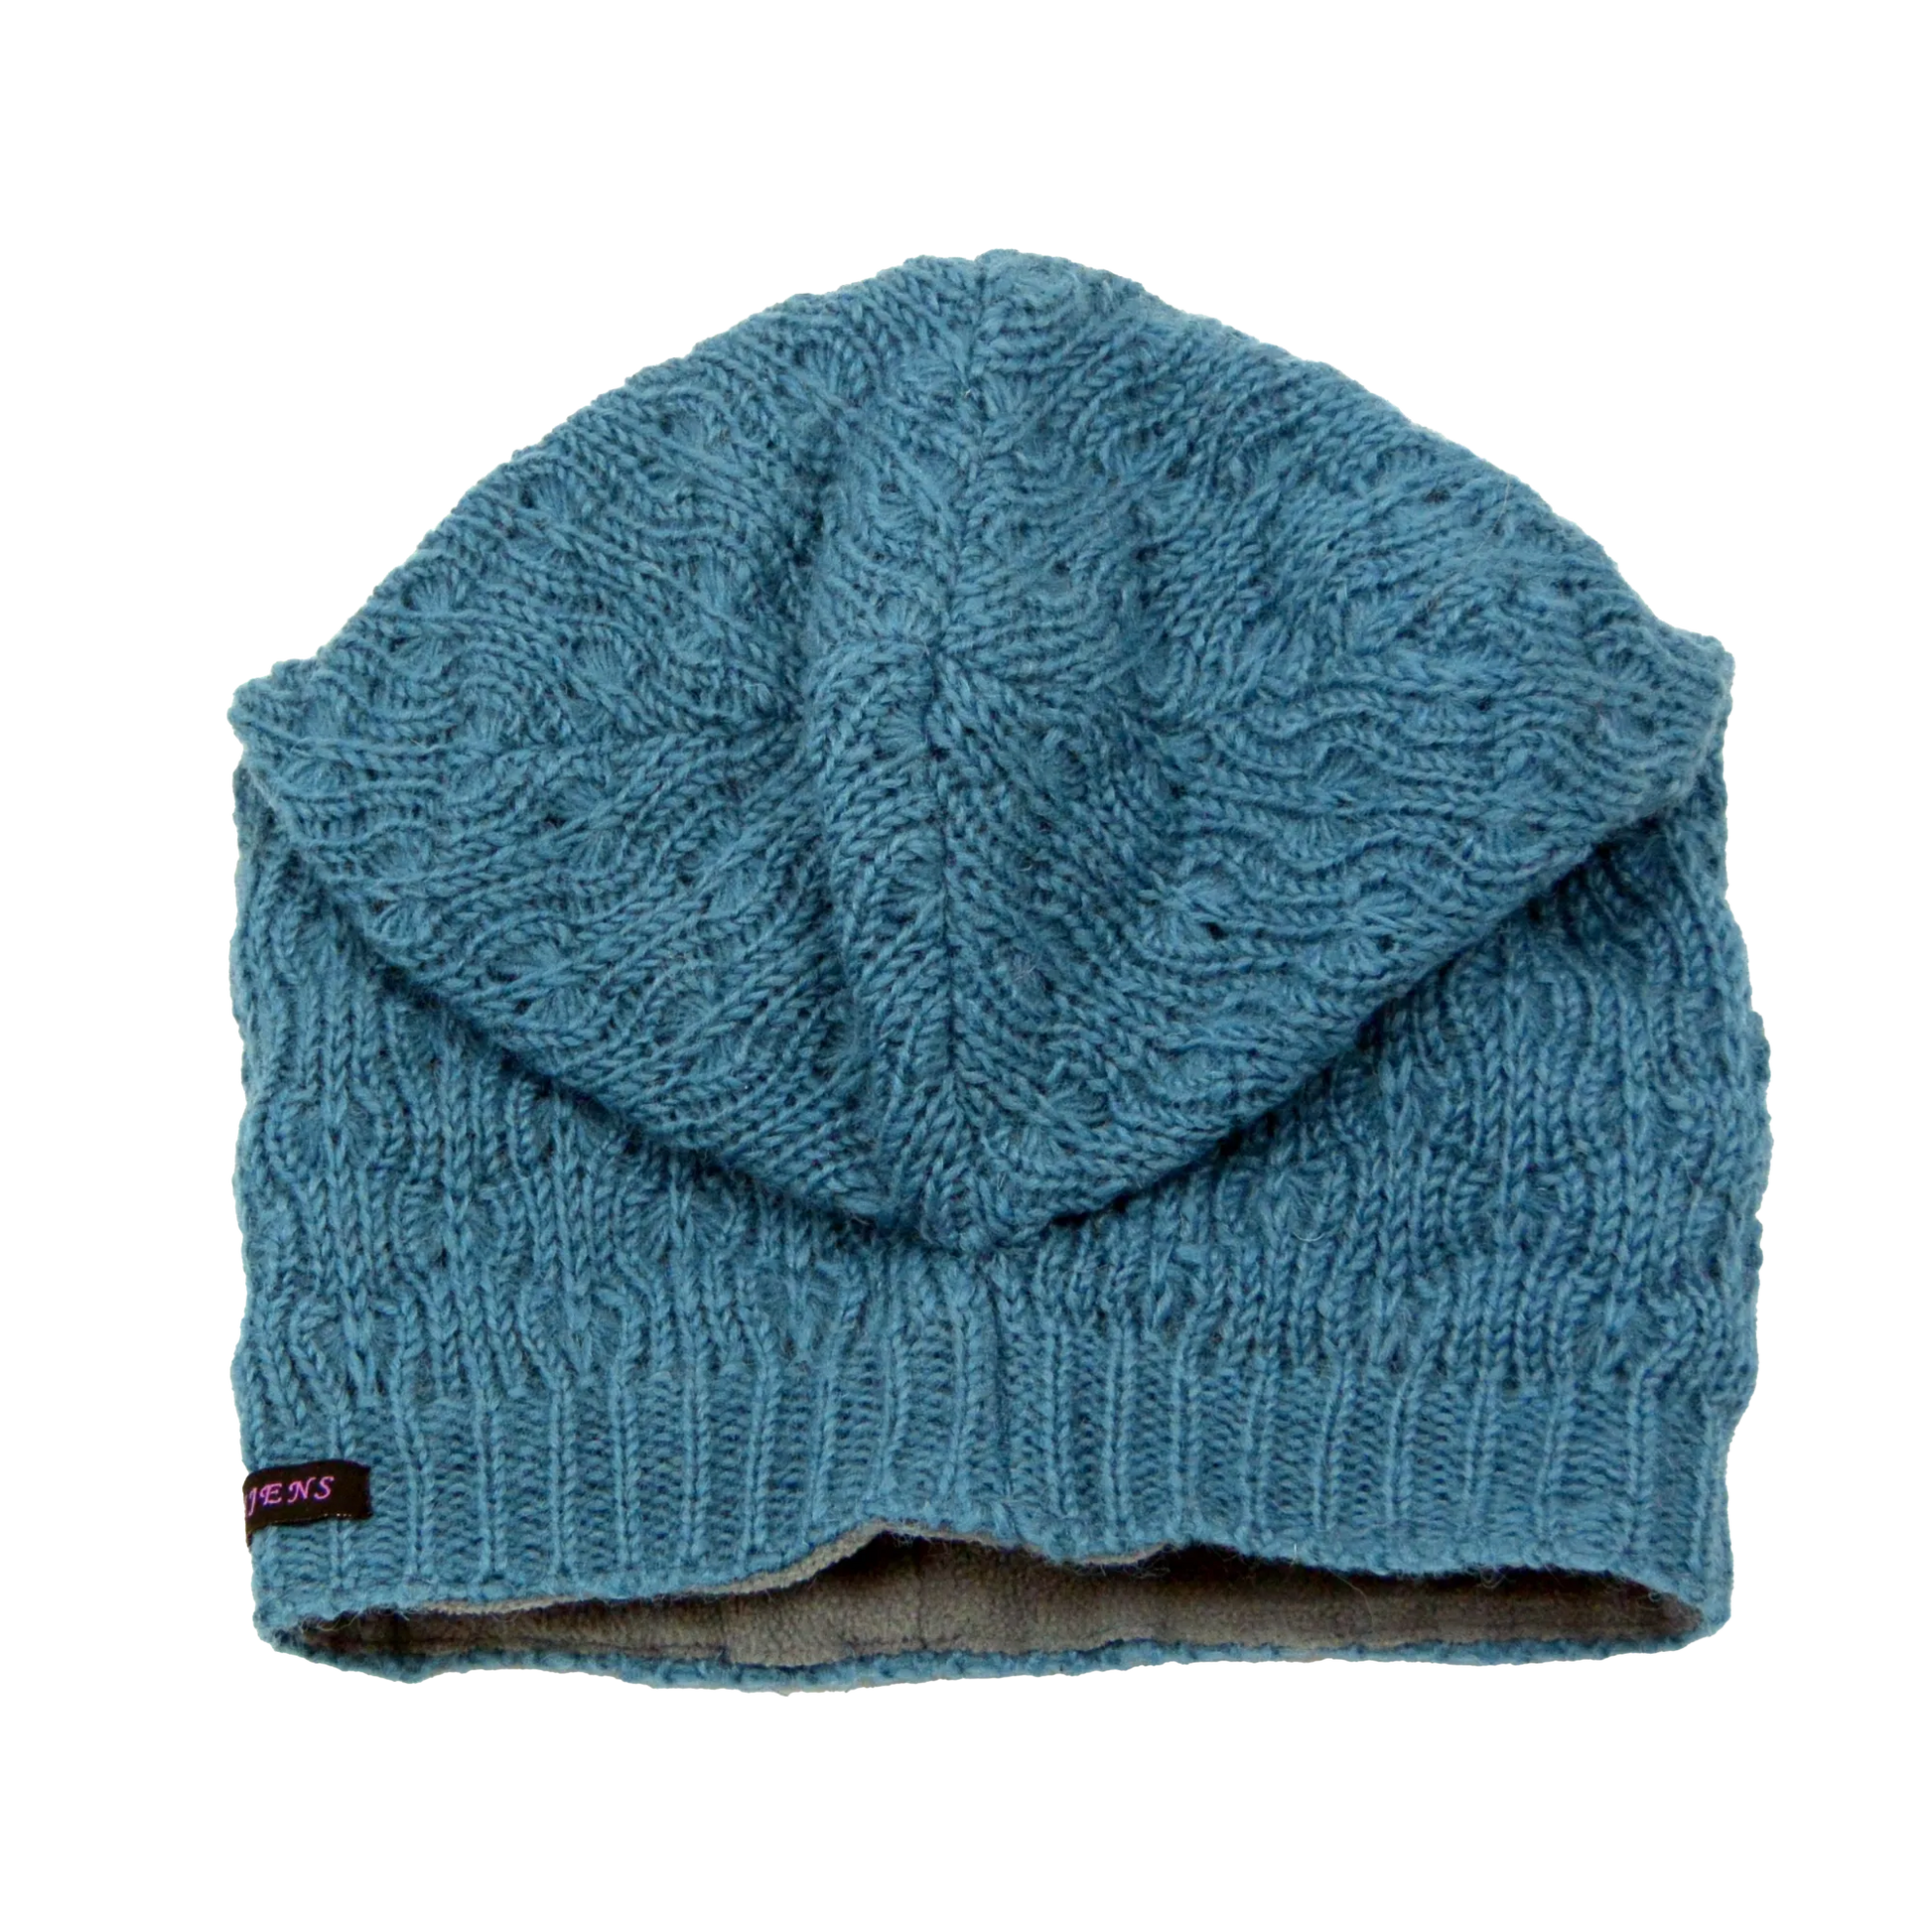 Long Beanie Mütze Handgestrickte aus Schurwolle Hellblau. Long Beanie Mütze mit fixierung am Hinterkopf.